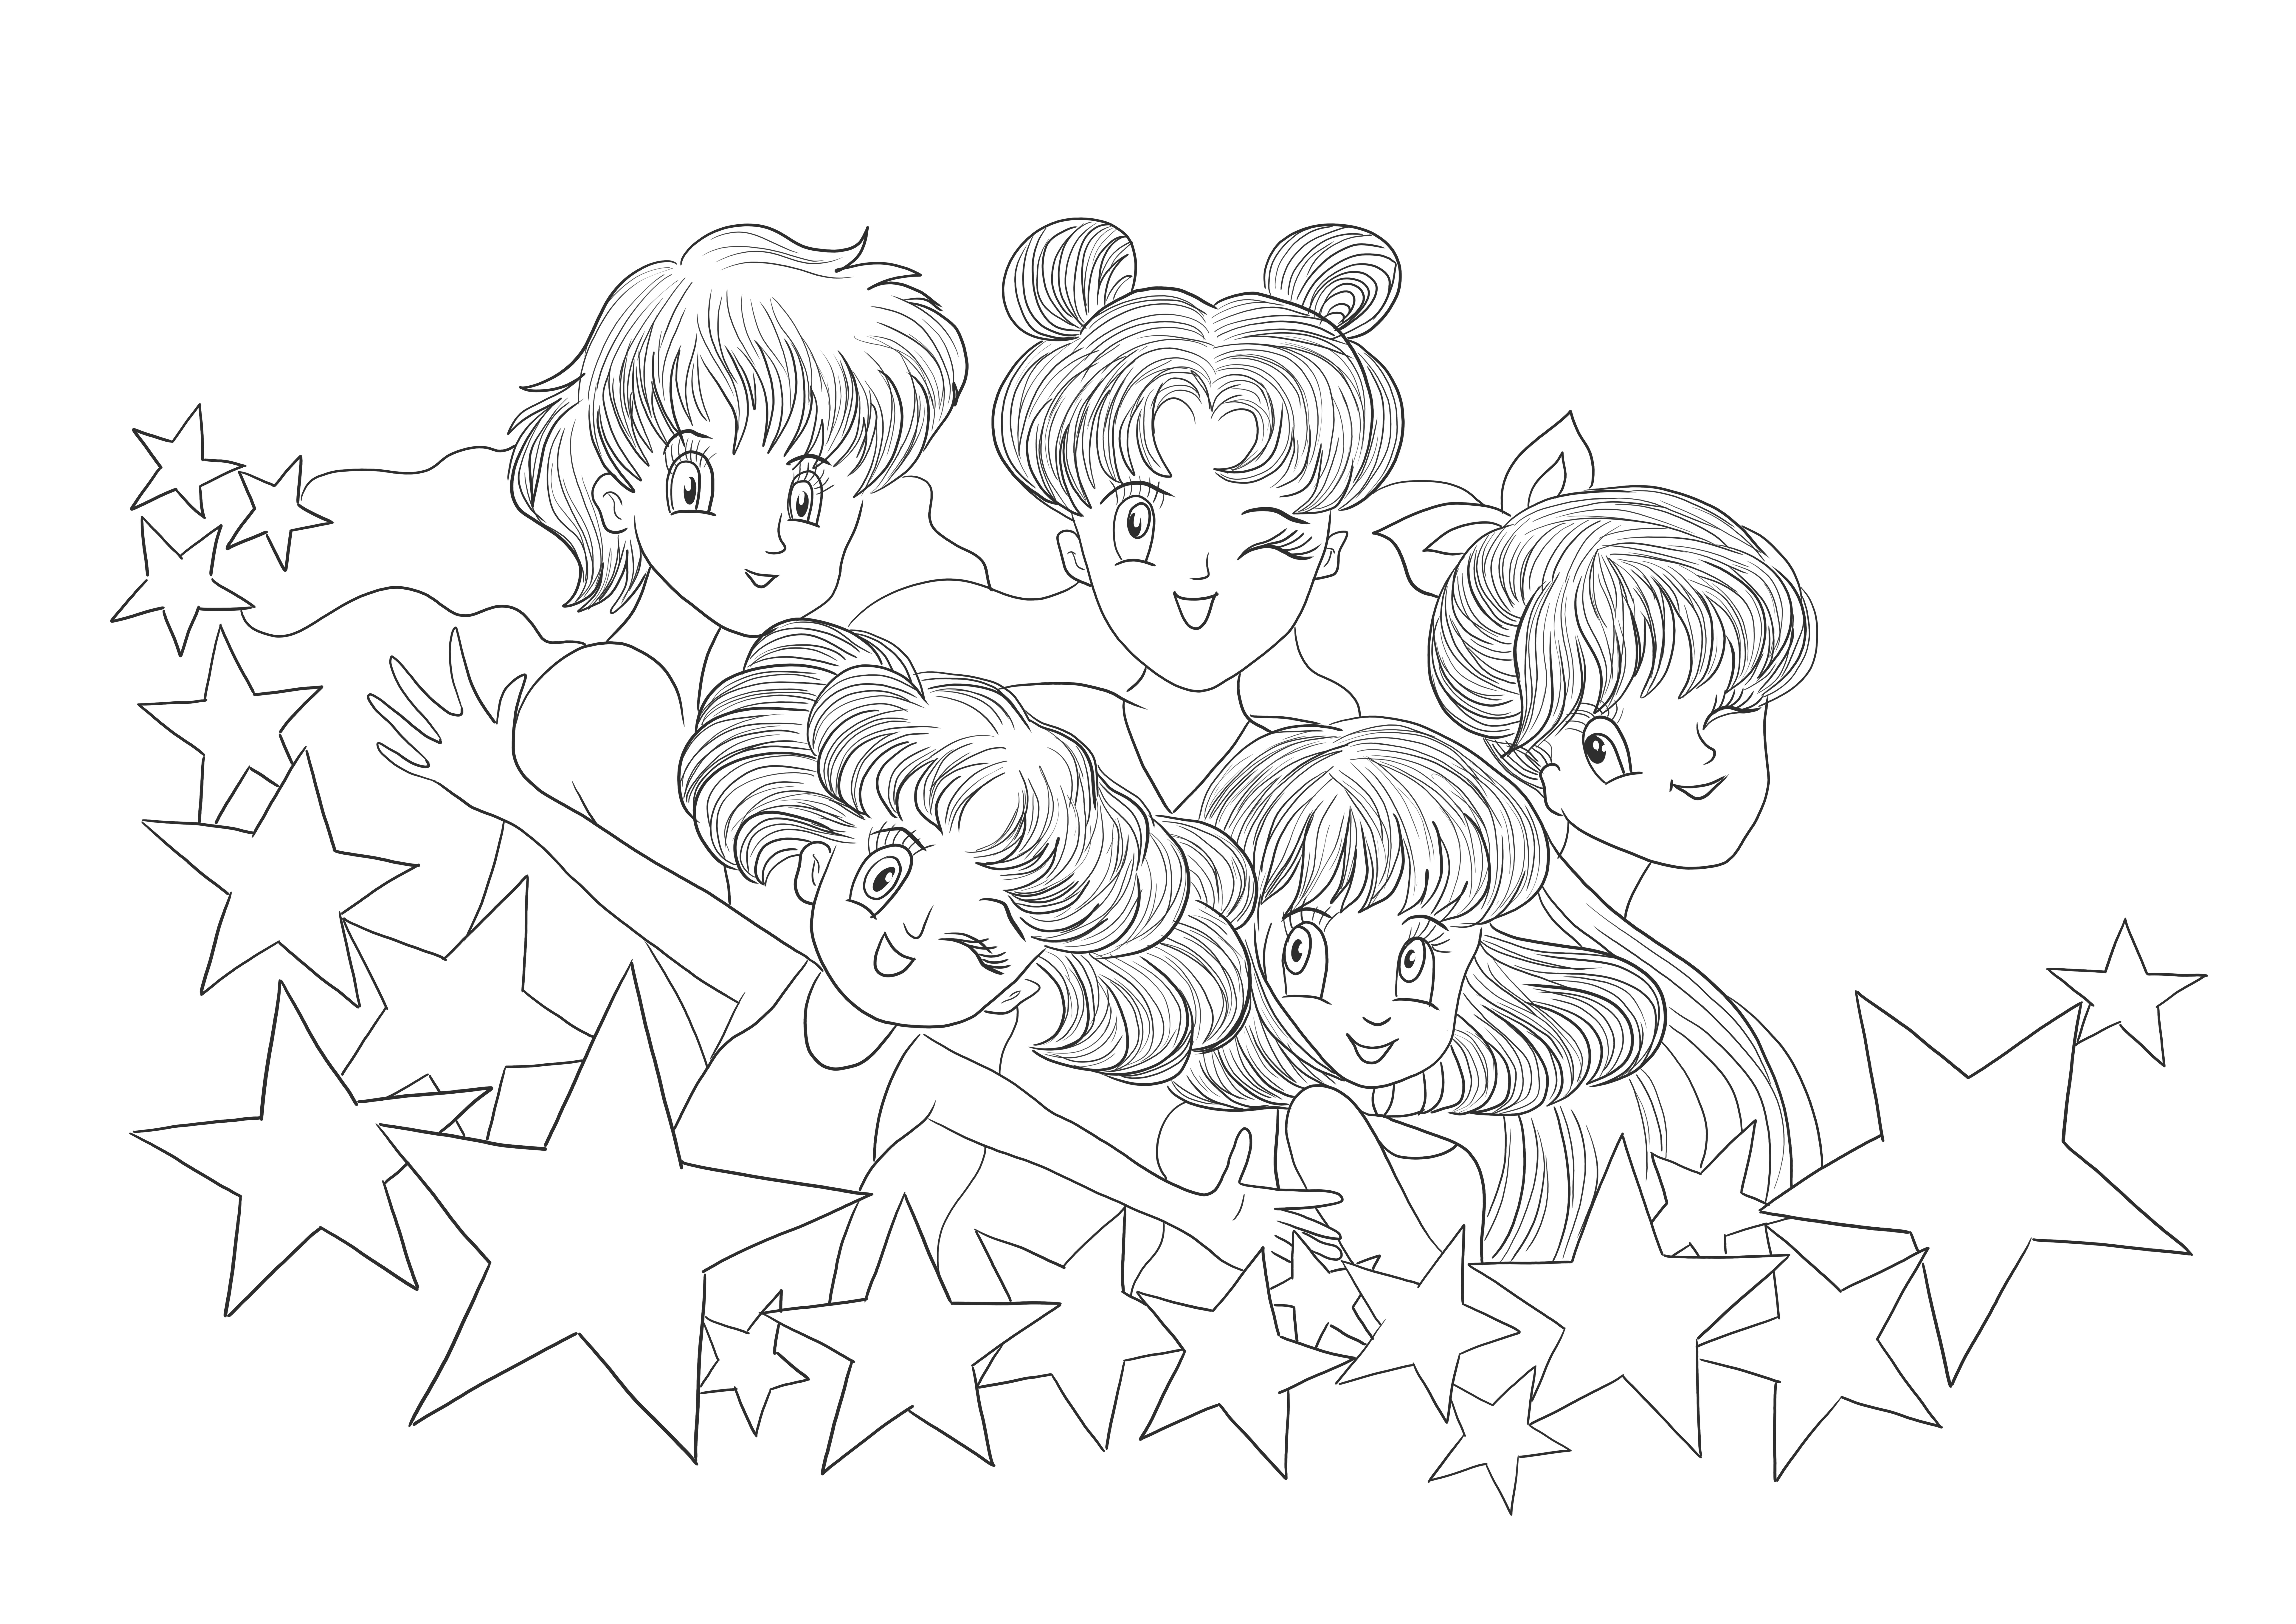 İndirmek ve çocukların boyaması için yazdırmak için ücretsiz yazdırılabilir Sailor Moon görselleri.